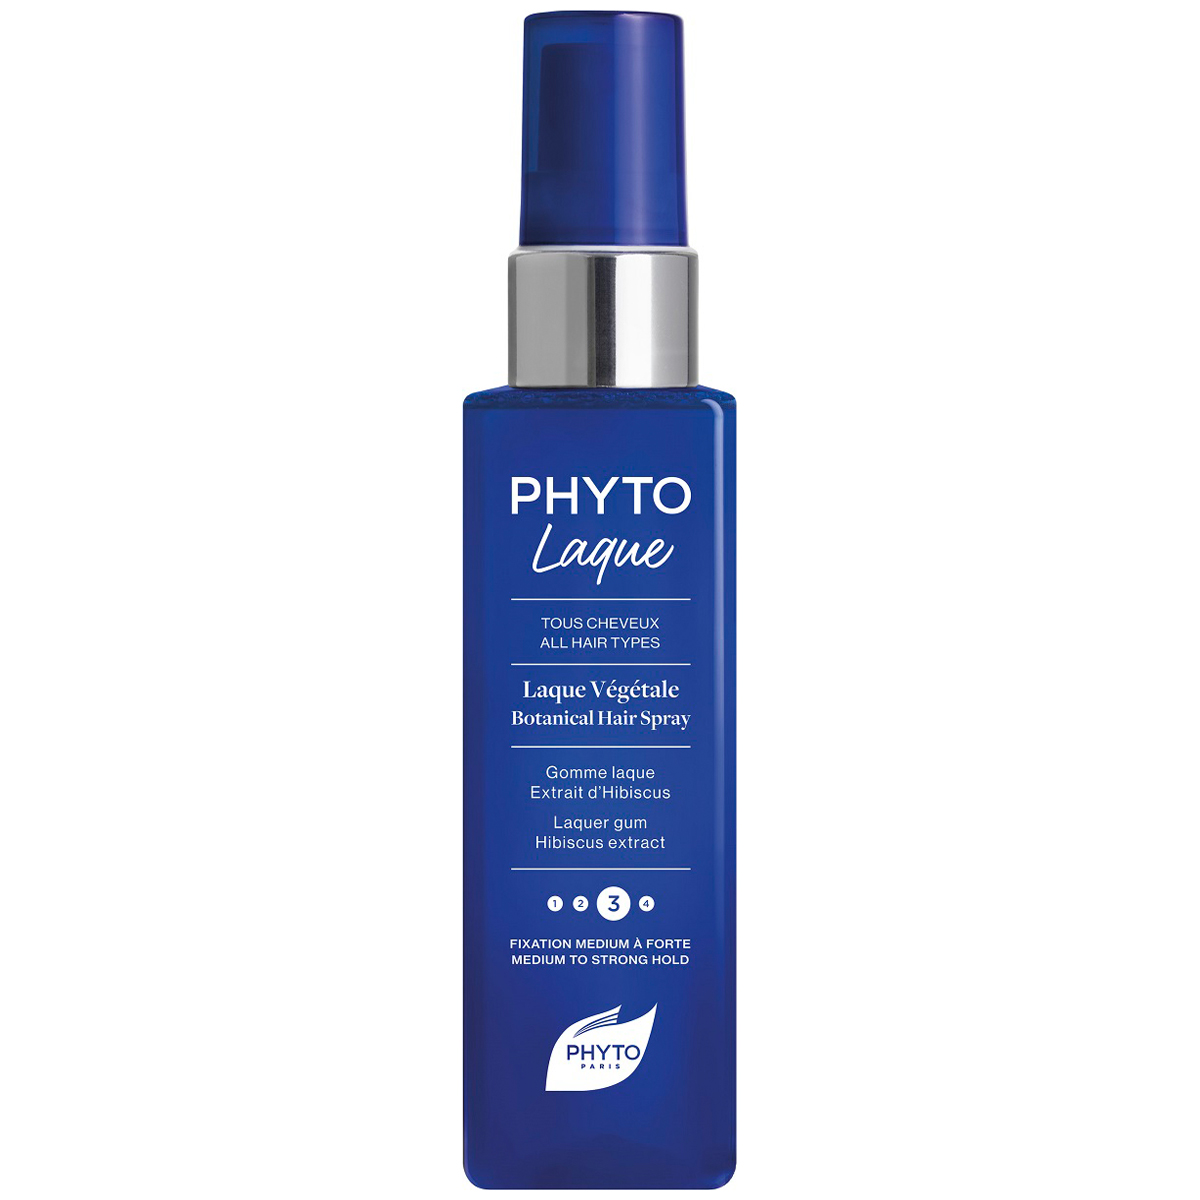 Phyto Растительный лак для волос с средней фиксацией, 100 мл (Phyto, Phytolaque) phyto phytolaque лак для волос с средней сильной фиксацией 100 мл